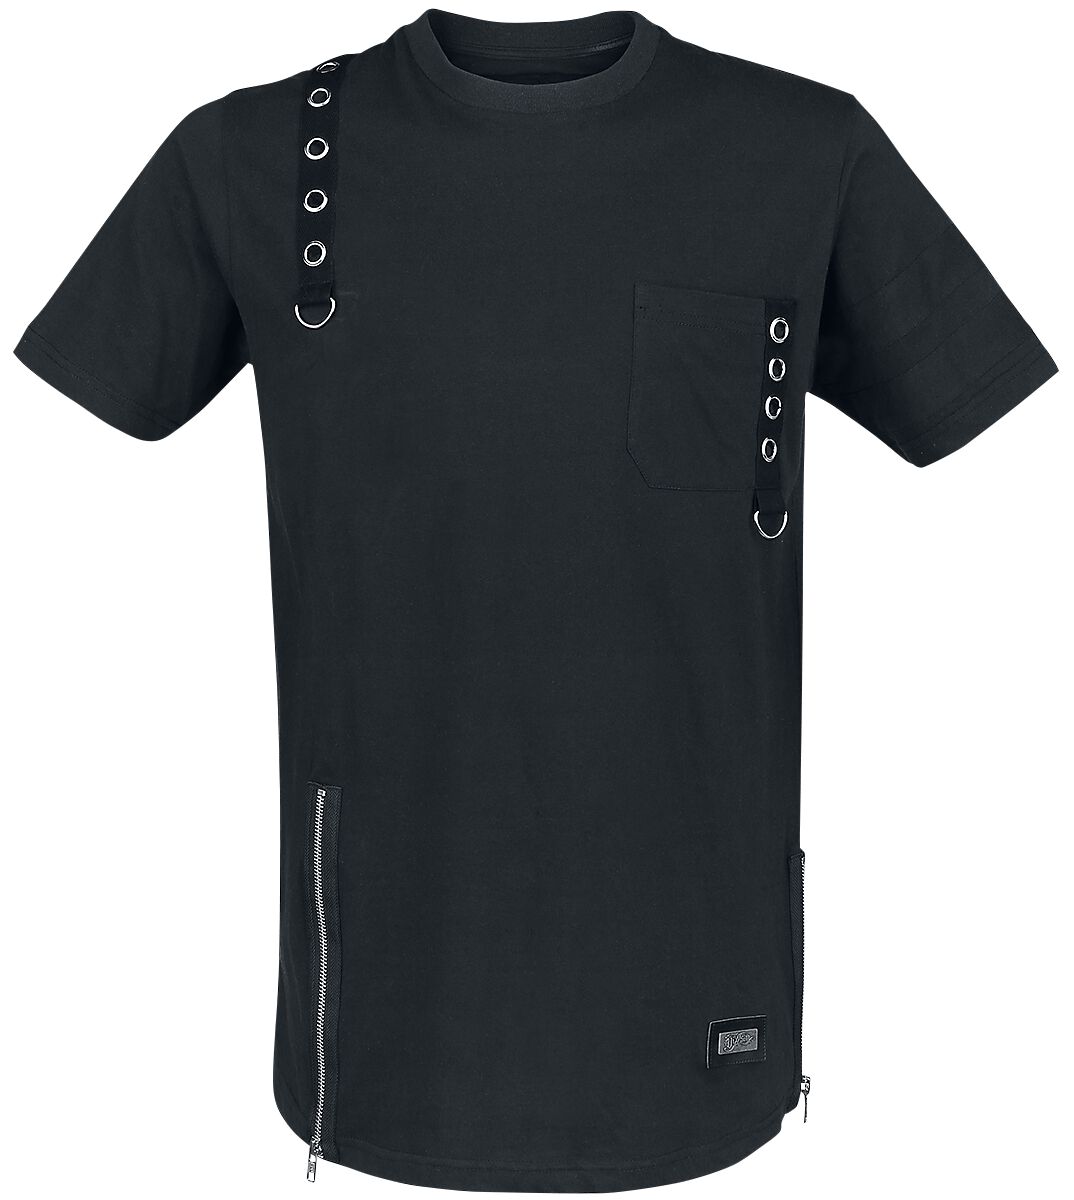 Vixxsin - Gothic T-Shirt - Jash Top - S bis 4XL - für Männer - Größe 4XL - schwarz